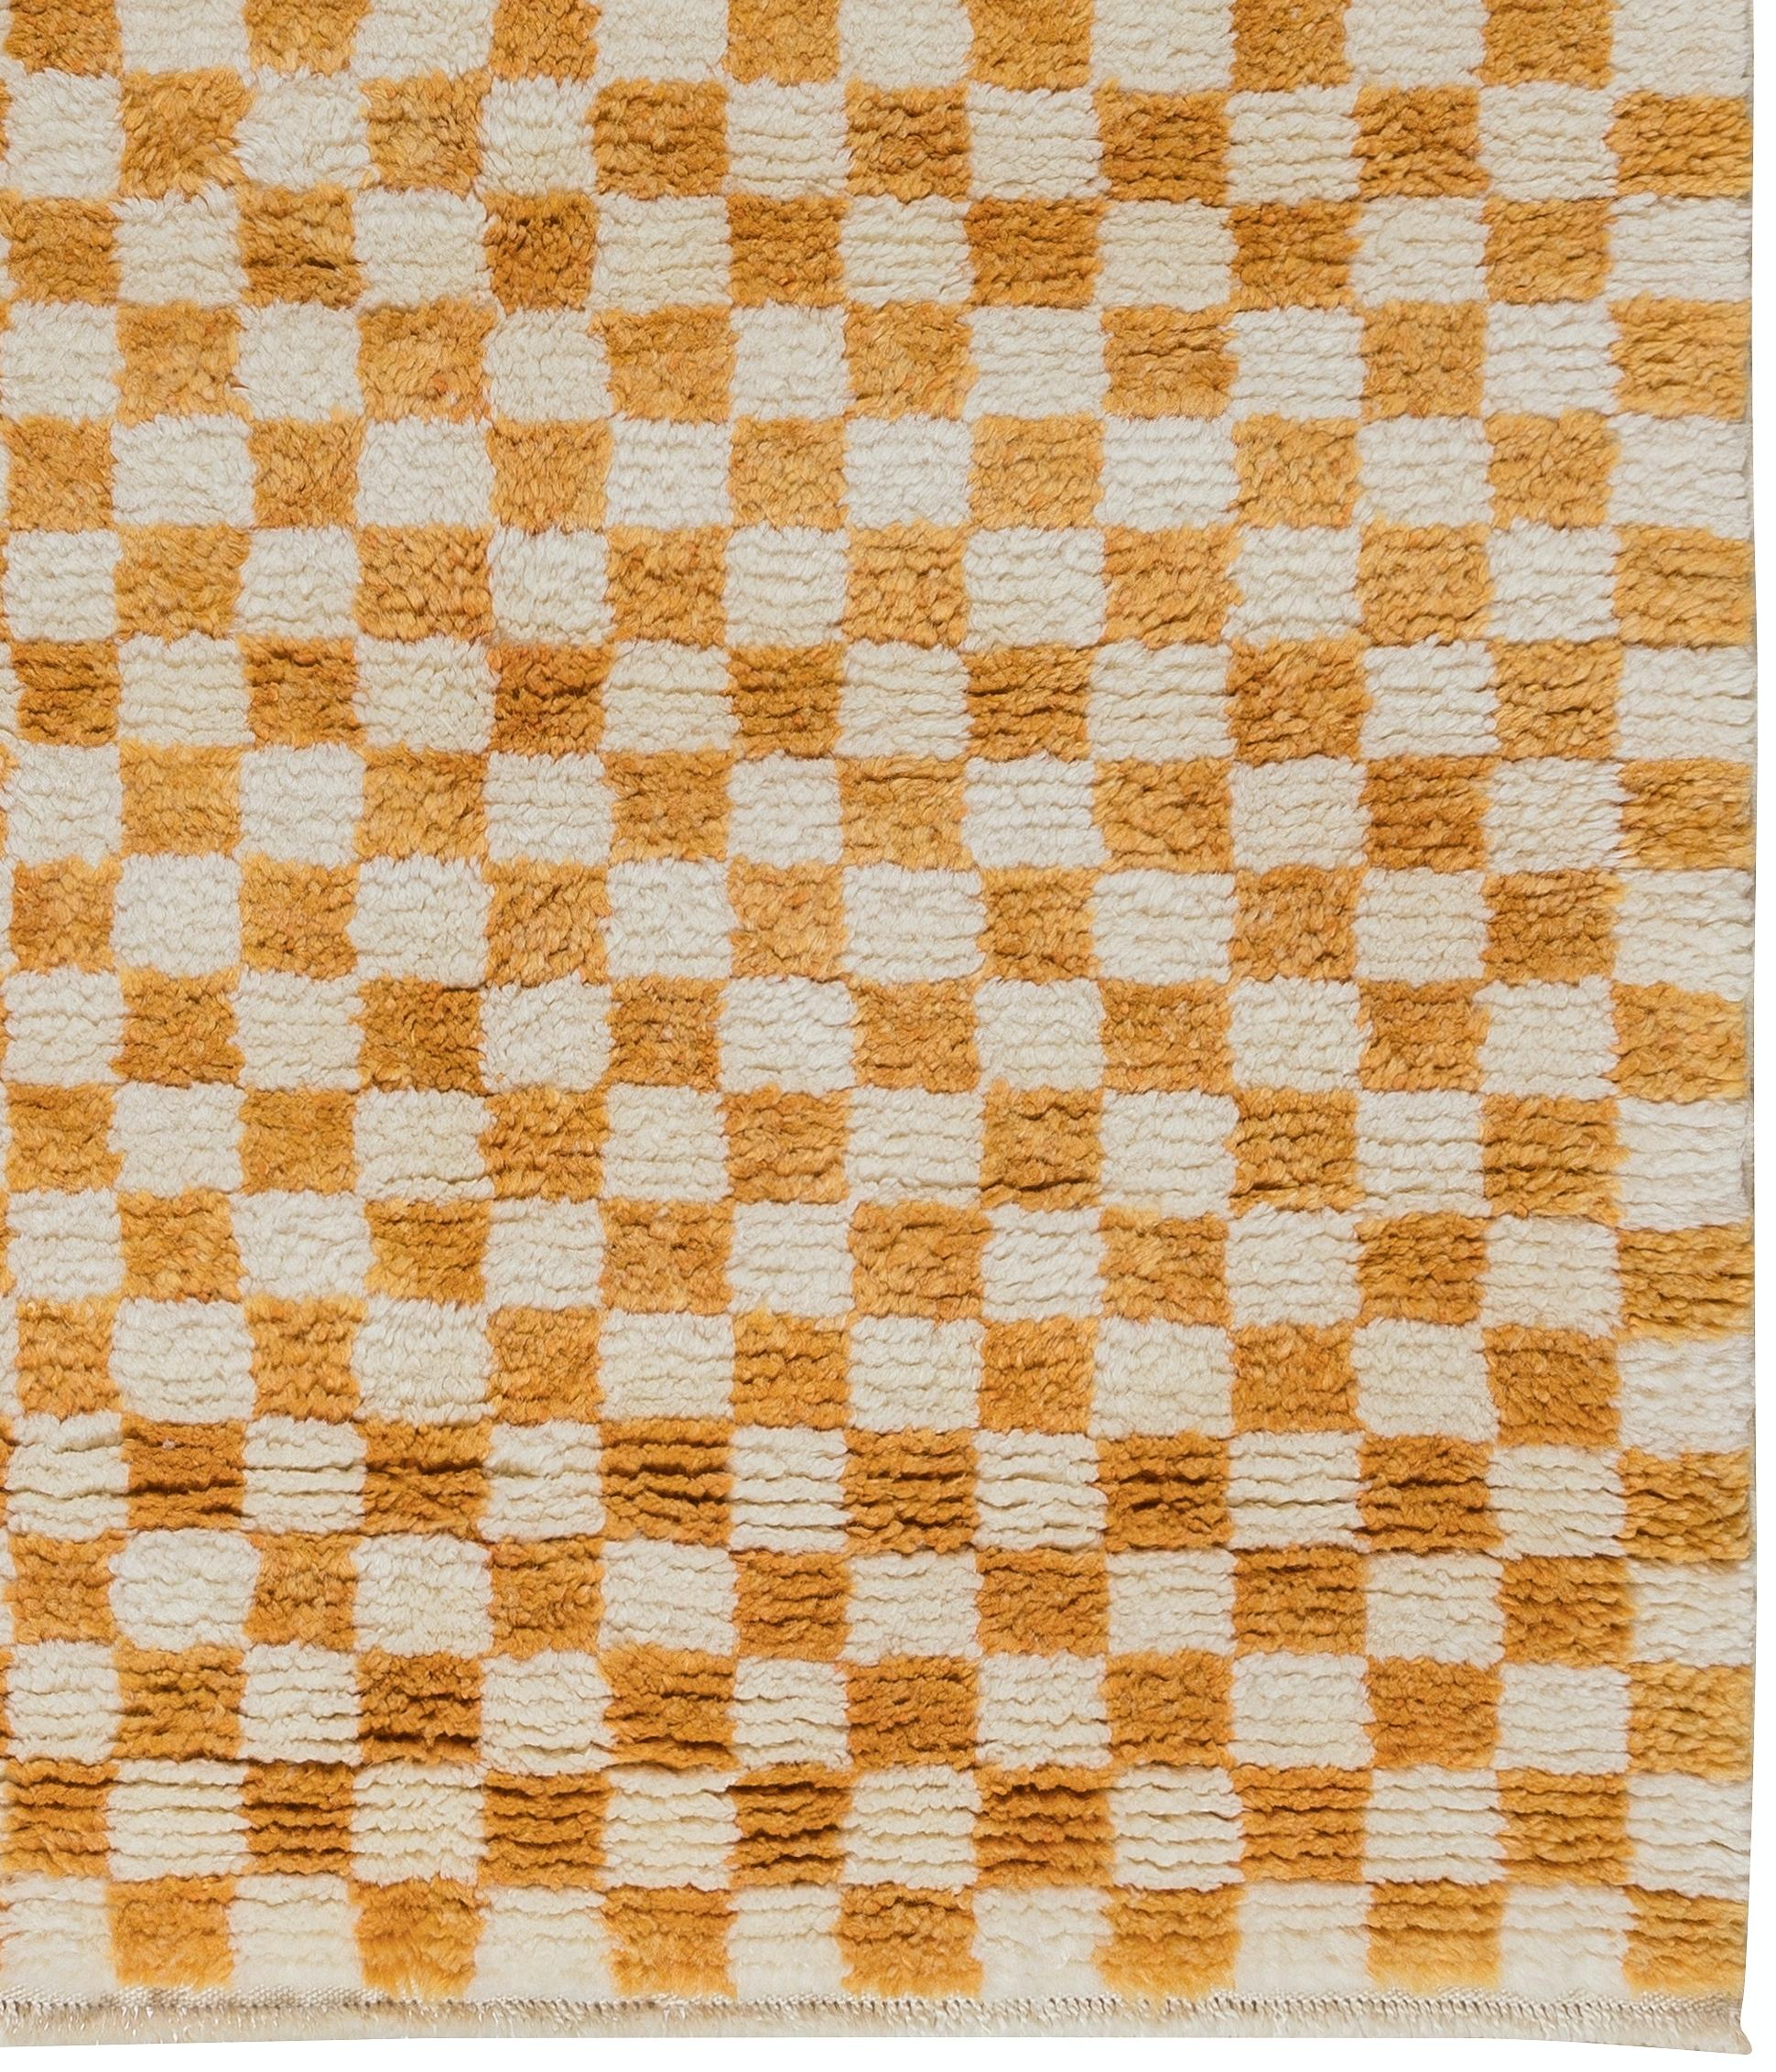 orange and white checkered rug